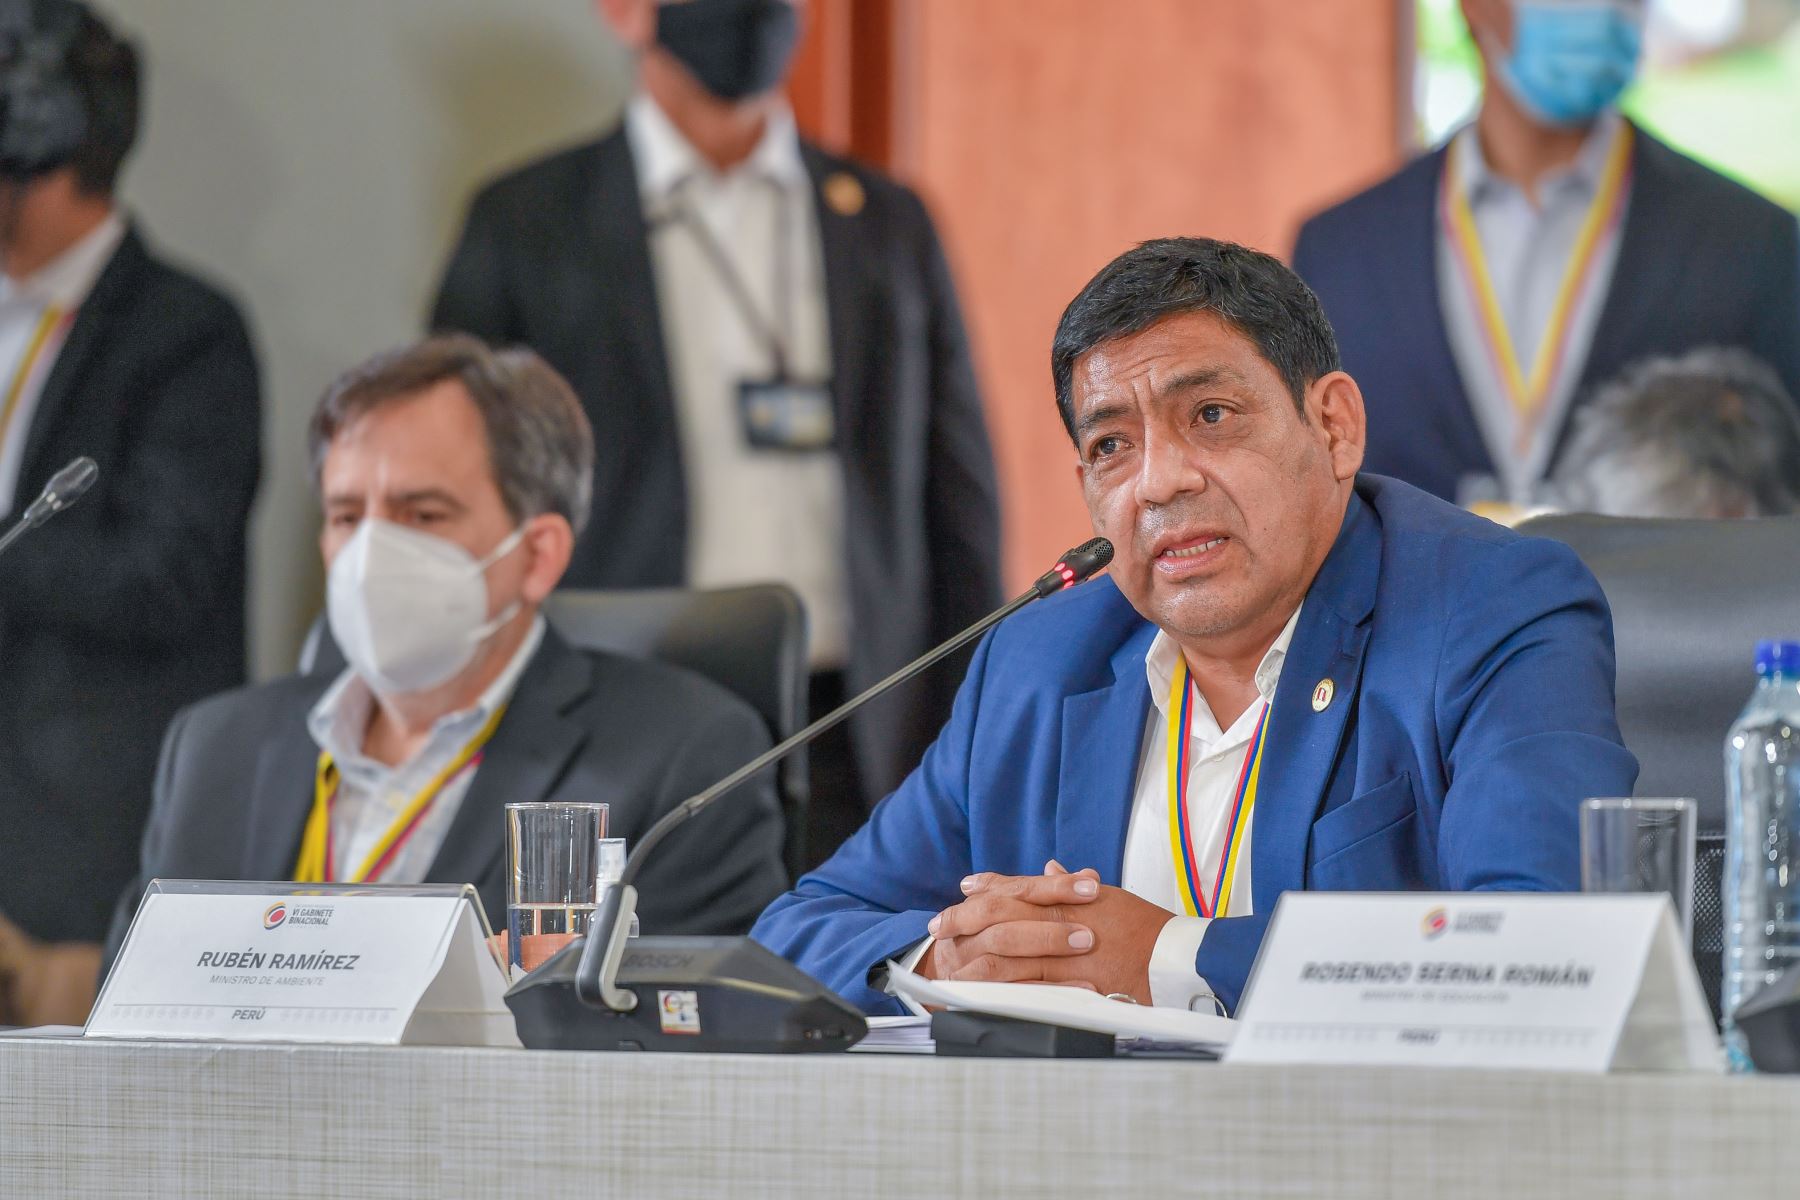 Rubén Rámirez Ministro de Ambiente de Colombia, participó en el Encuentro Presidencial y VI Gabinete Binacional Perú-Colombia.
Foto: ANDINA/Presidencia Perú